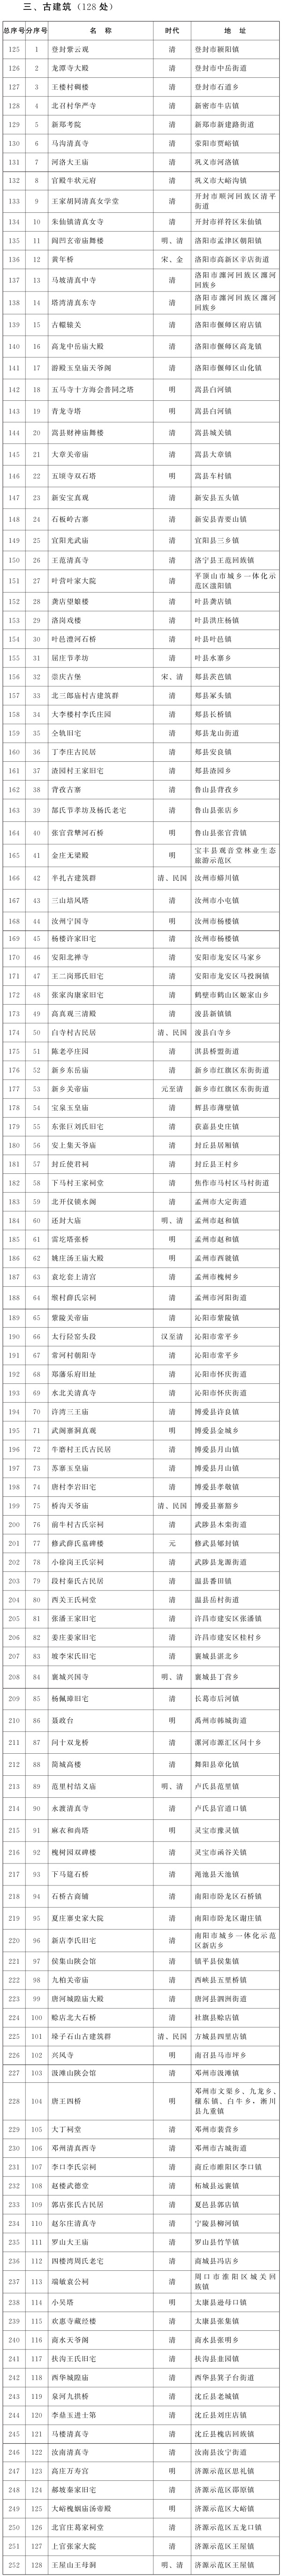 河南省人民政府關于公布第八批河南省文物保護單位名單的通知